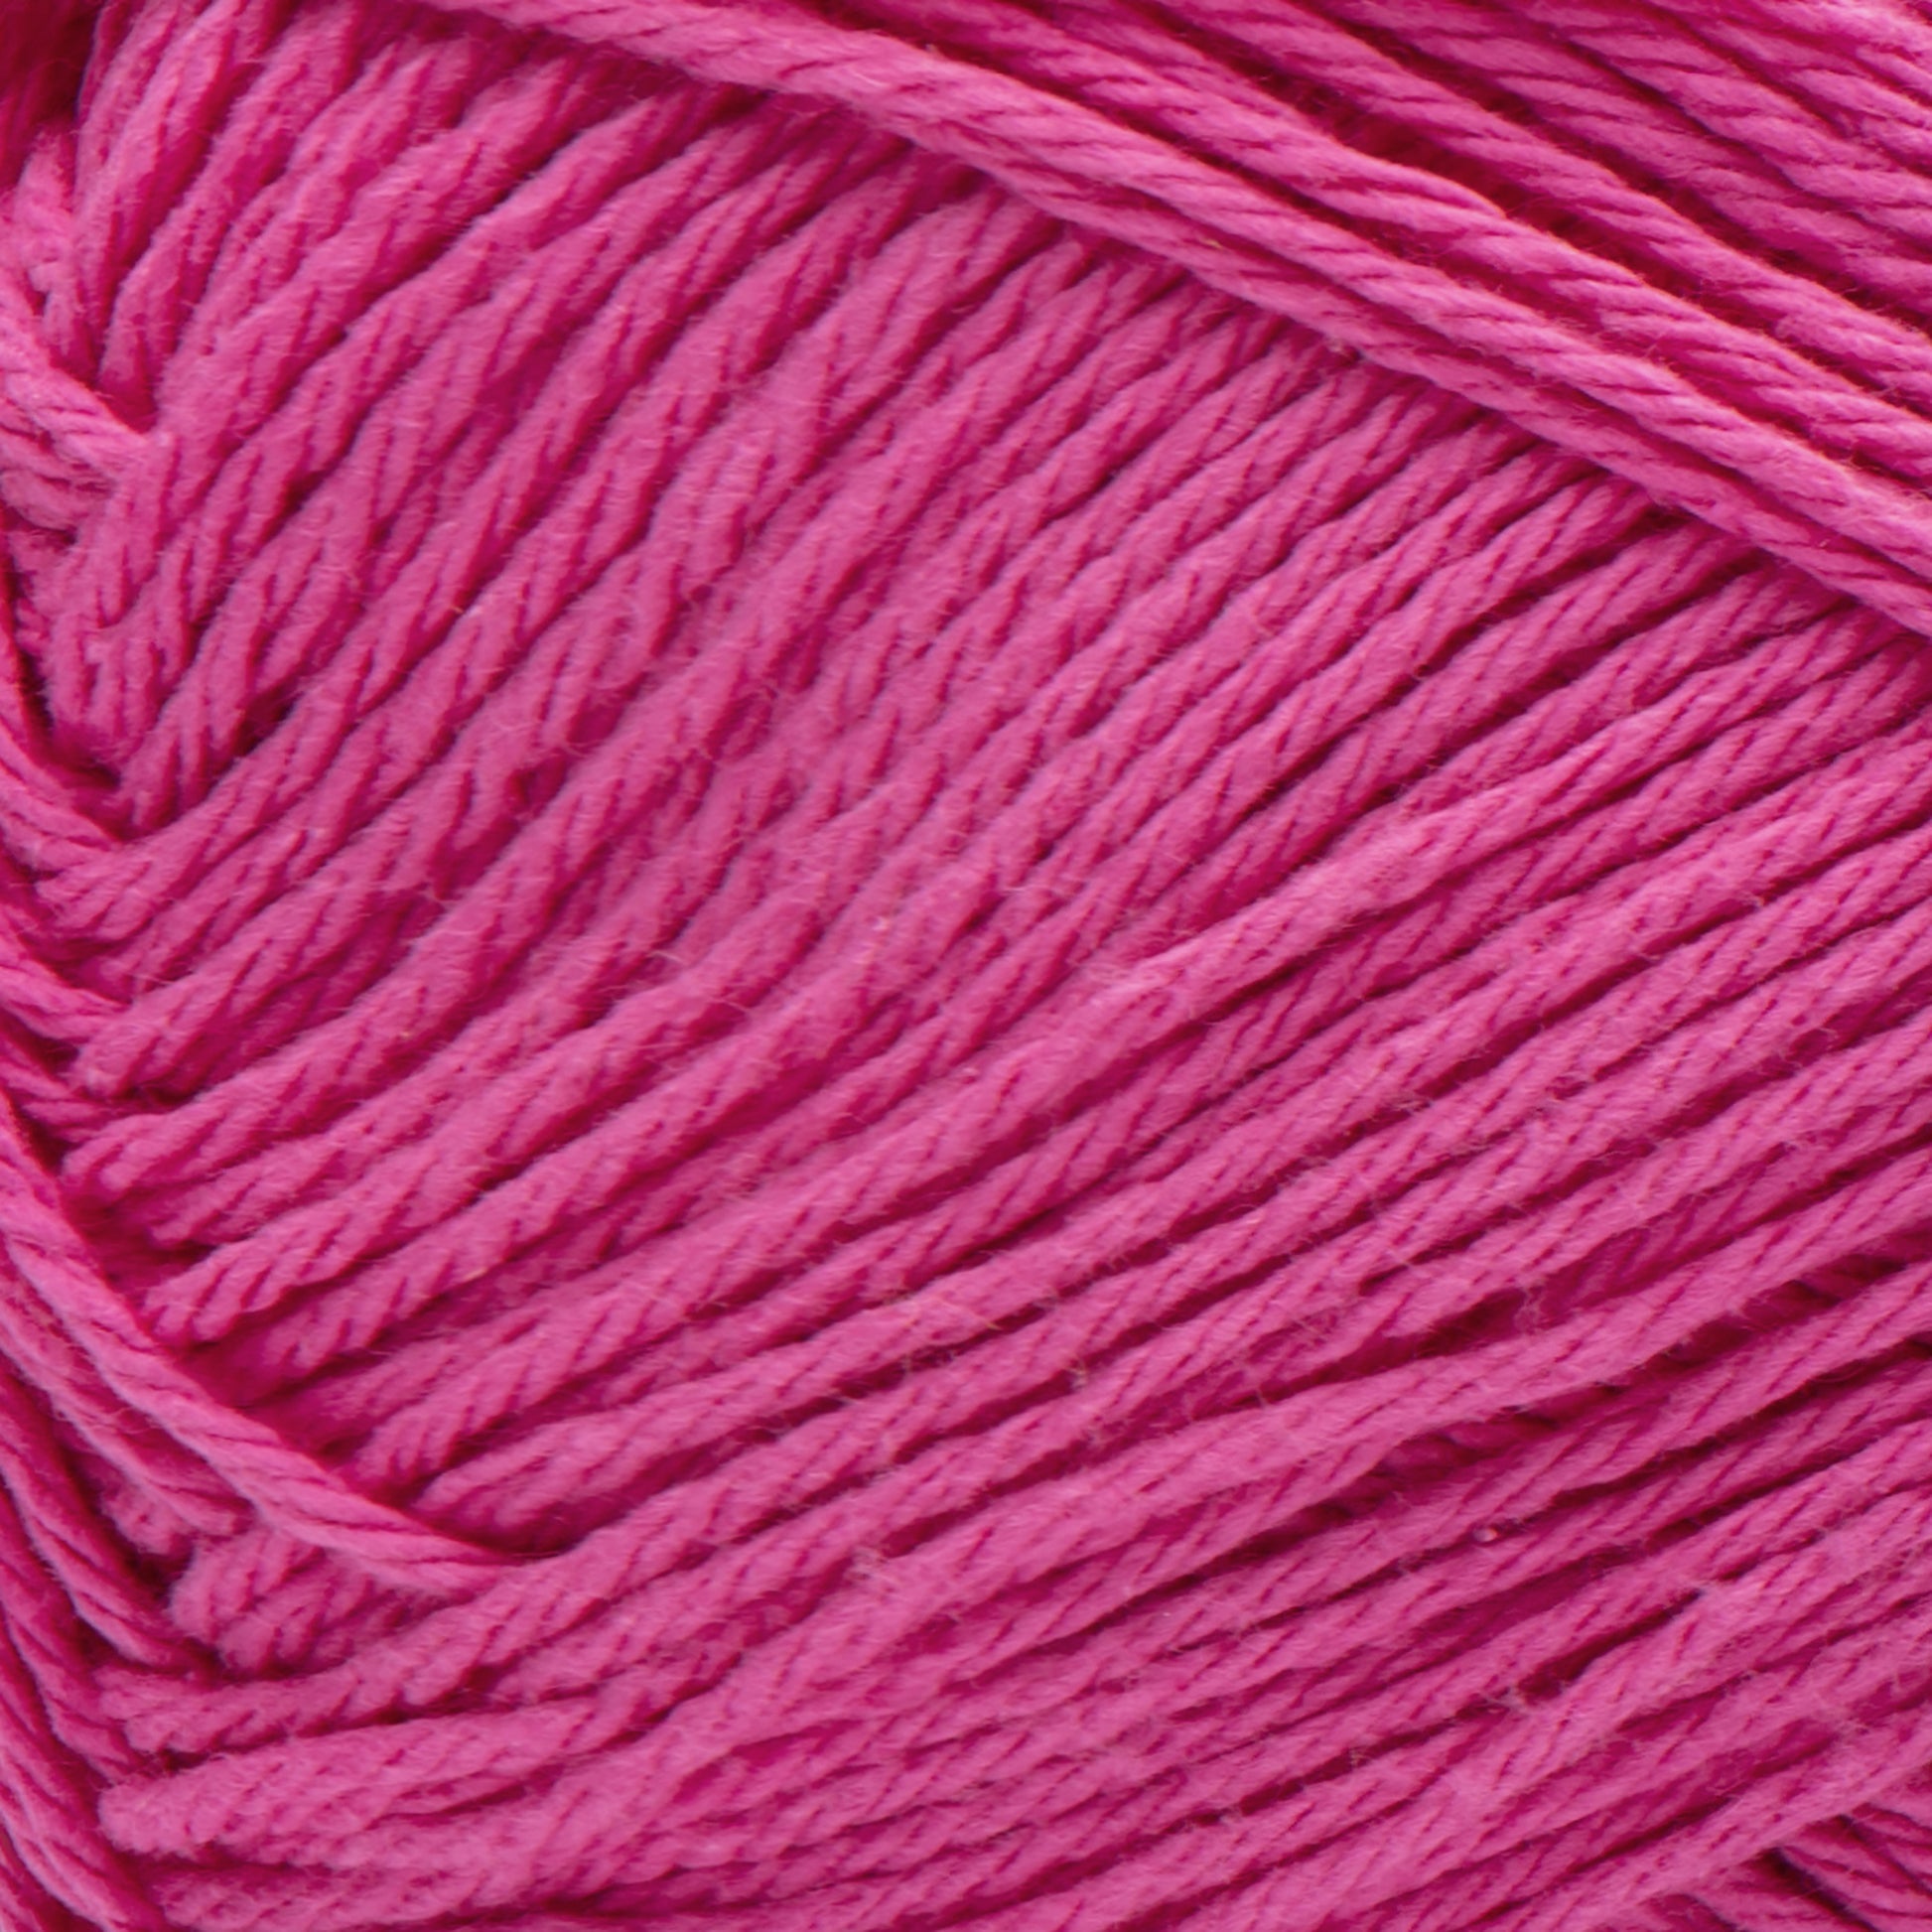 Bernat Handicrafter Cotton Yarn (400g/14oz) Hot Pink